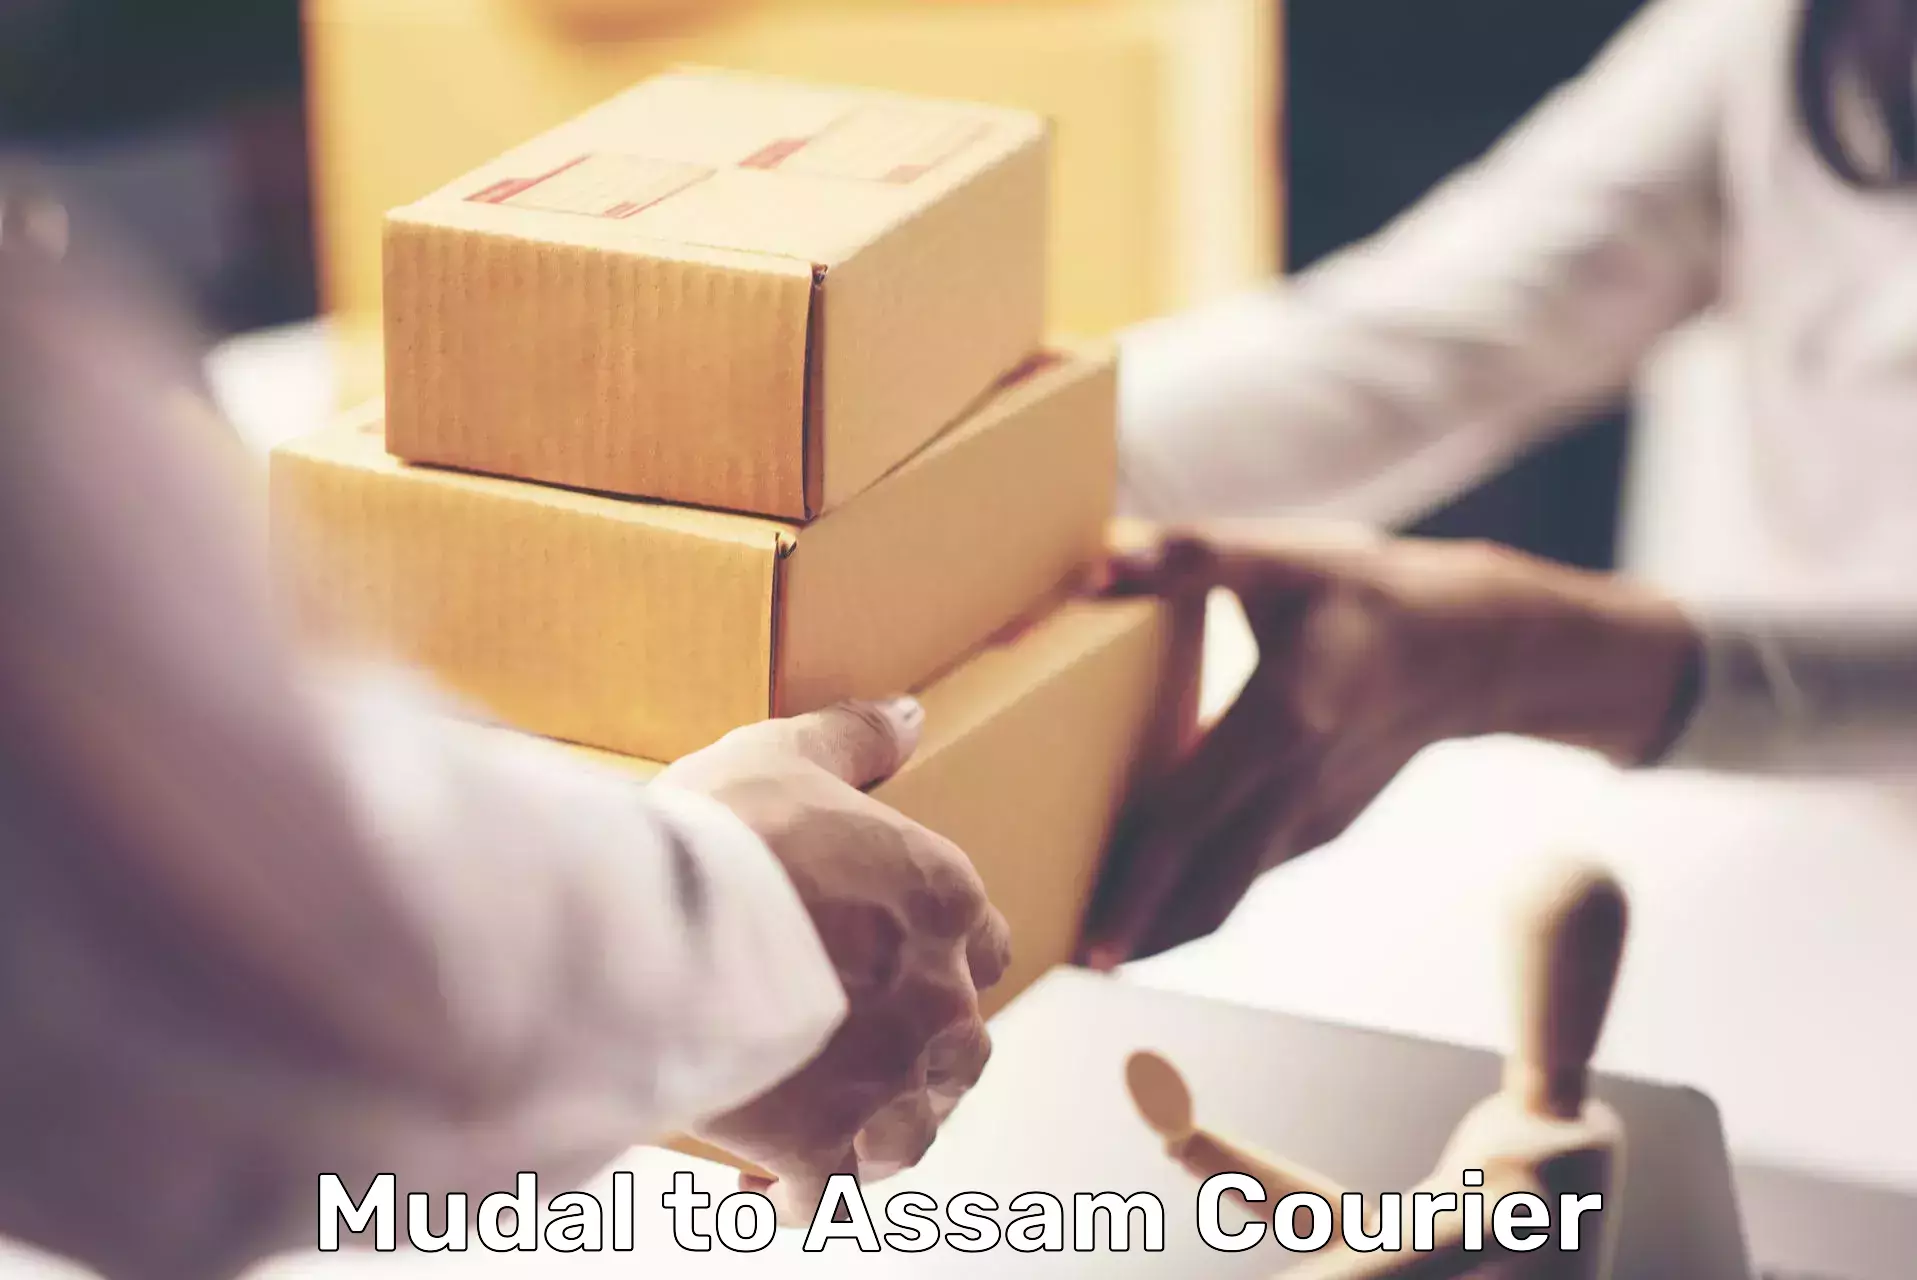 Courier service comparison Mudal to Agomani